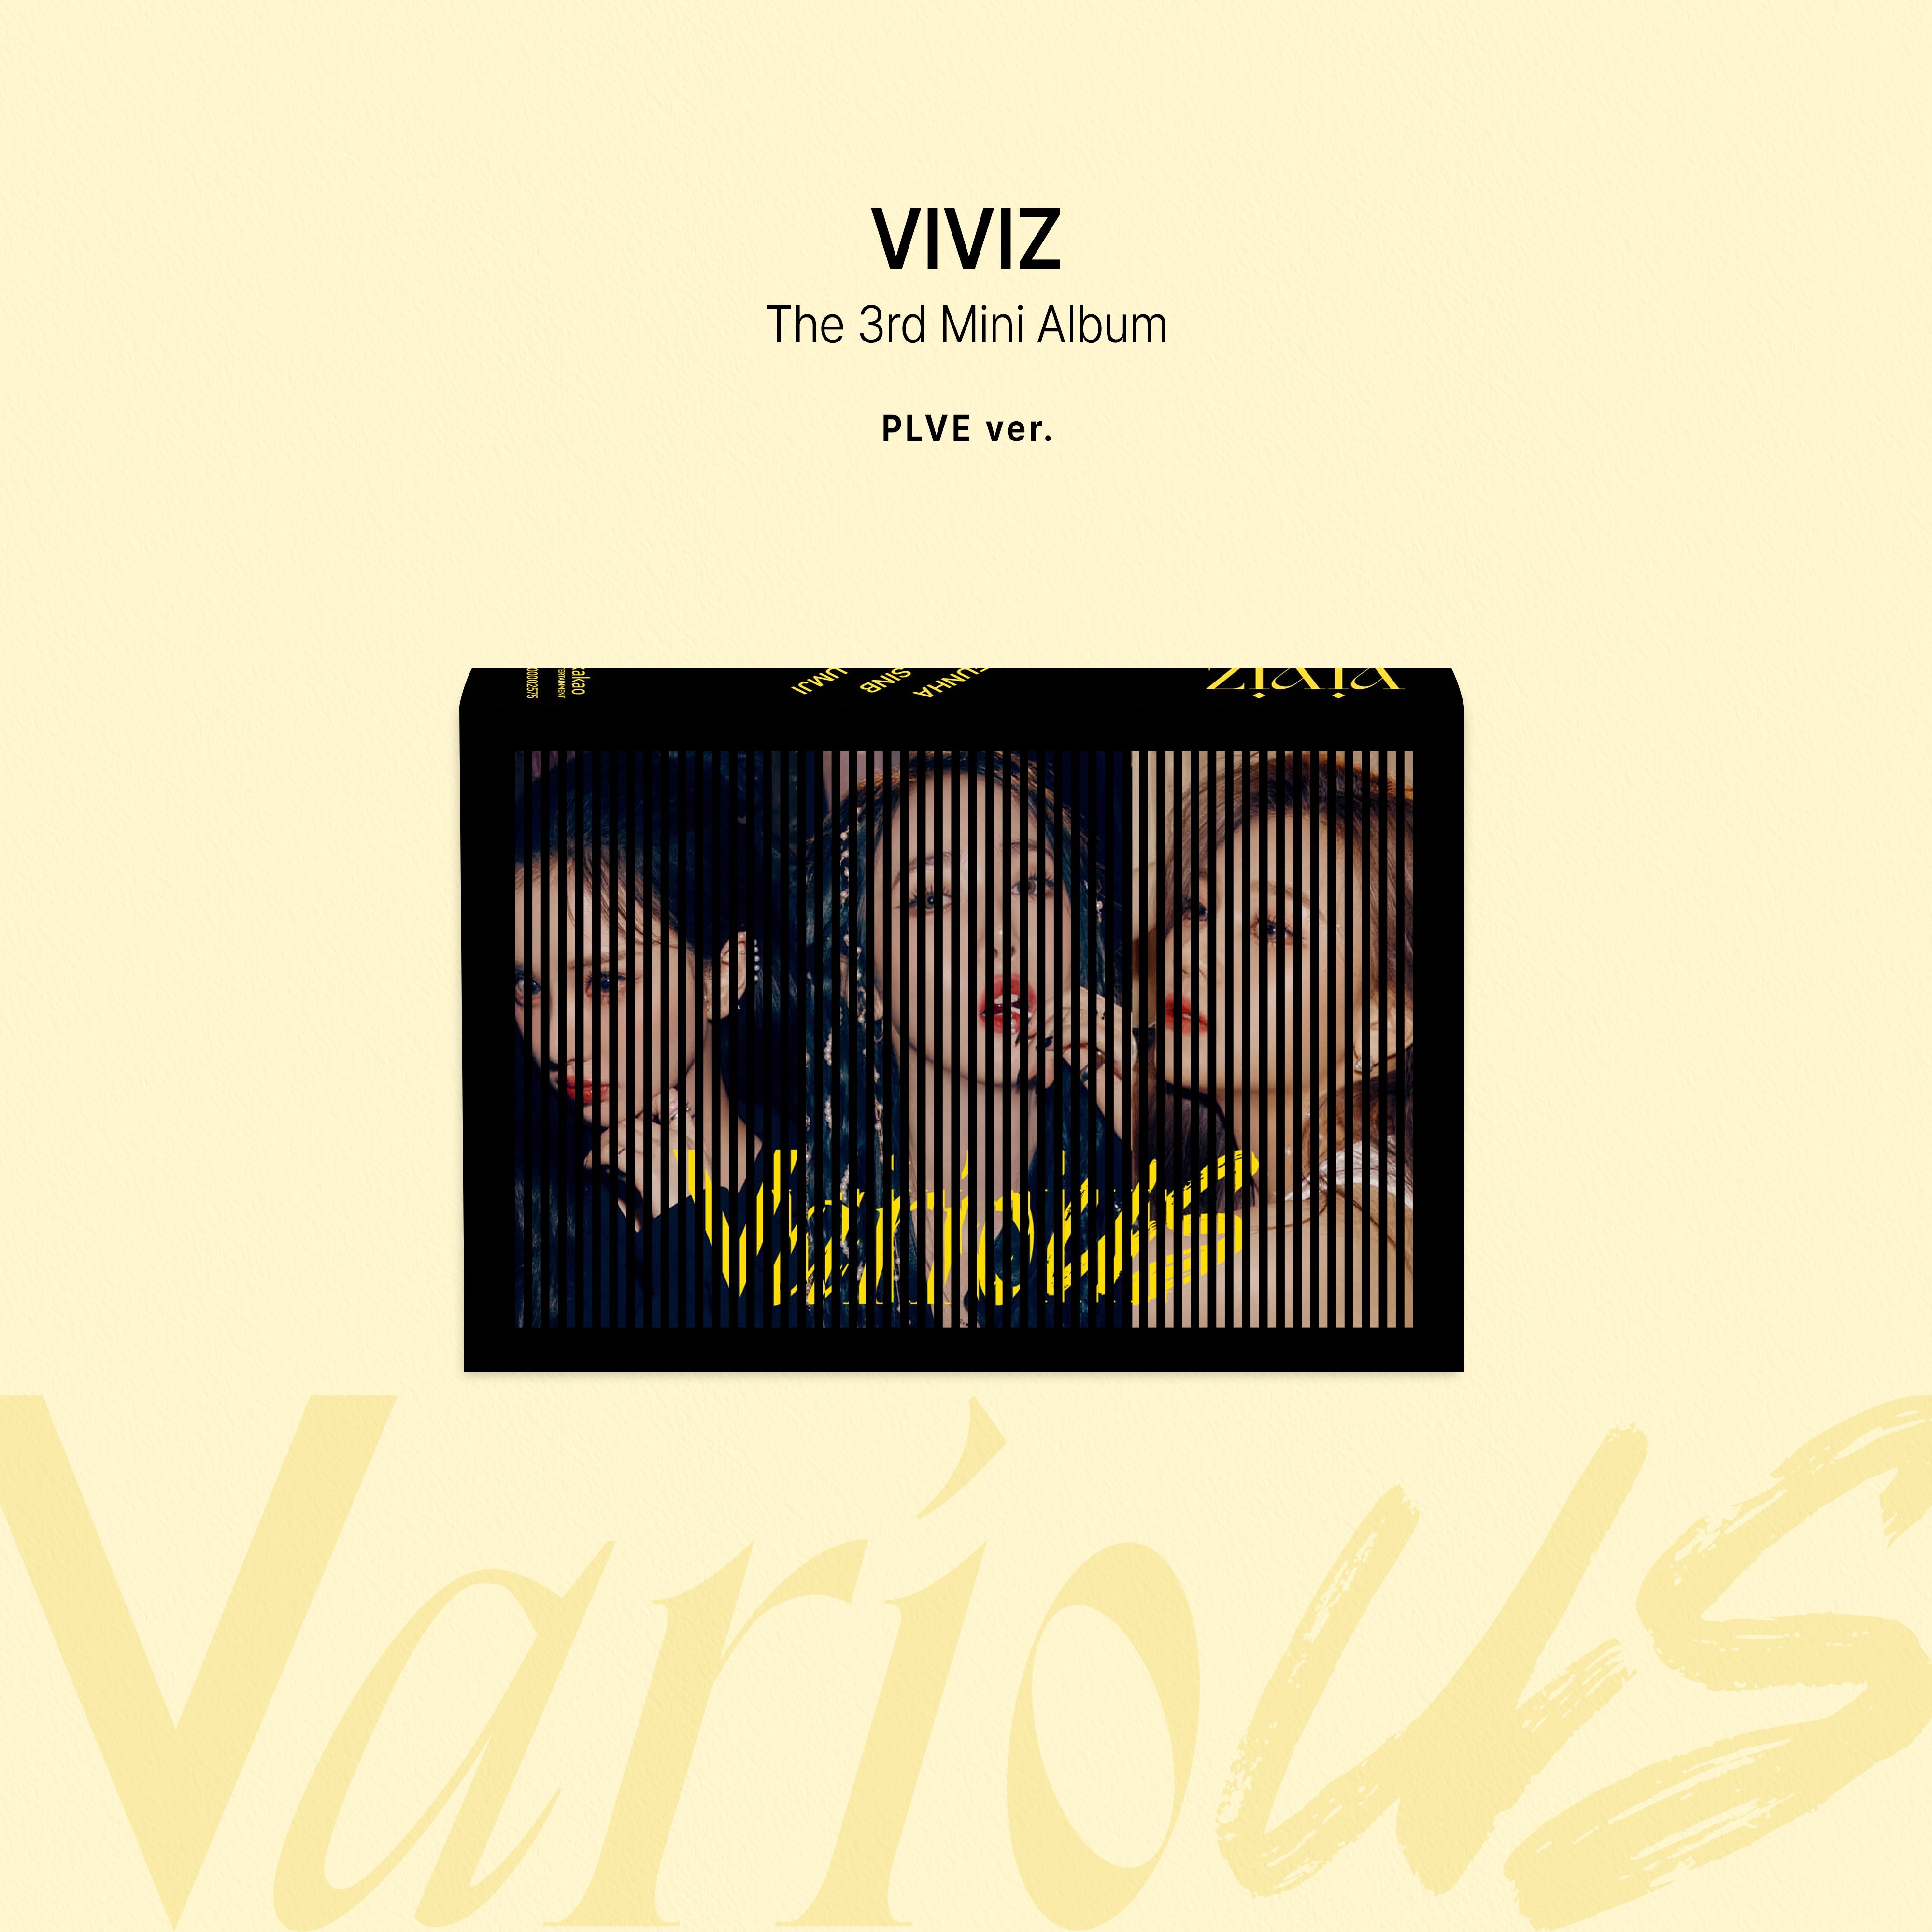 VIVIZ - VarioUS (PLVE ver.)